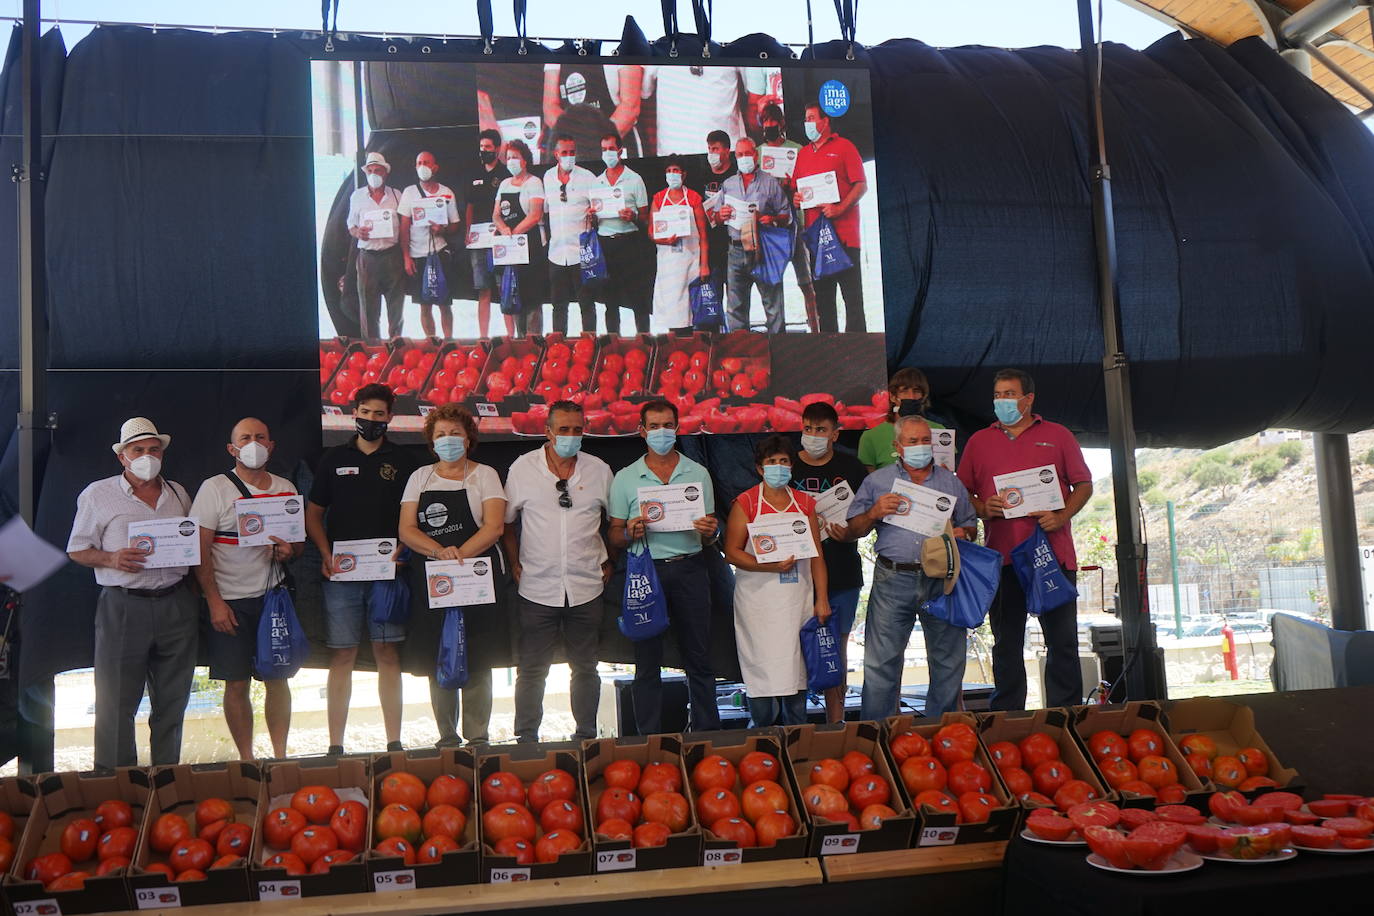 El Mercado Agroalimentario acoge la tradicional subasta de esta exclusiva variedad de tomates, cuya recaudación se destinará a Cruz Roja